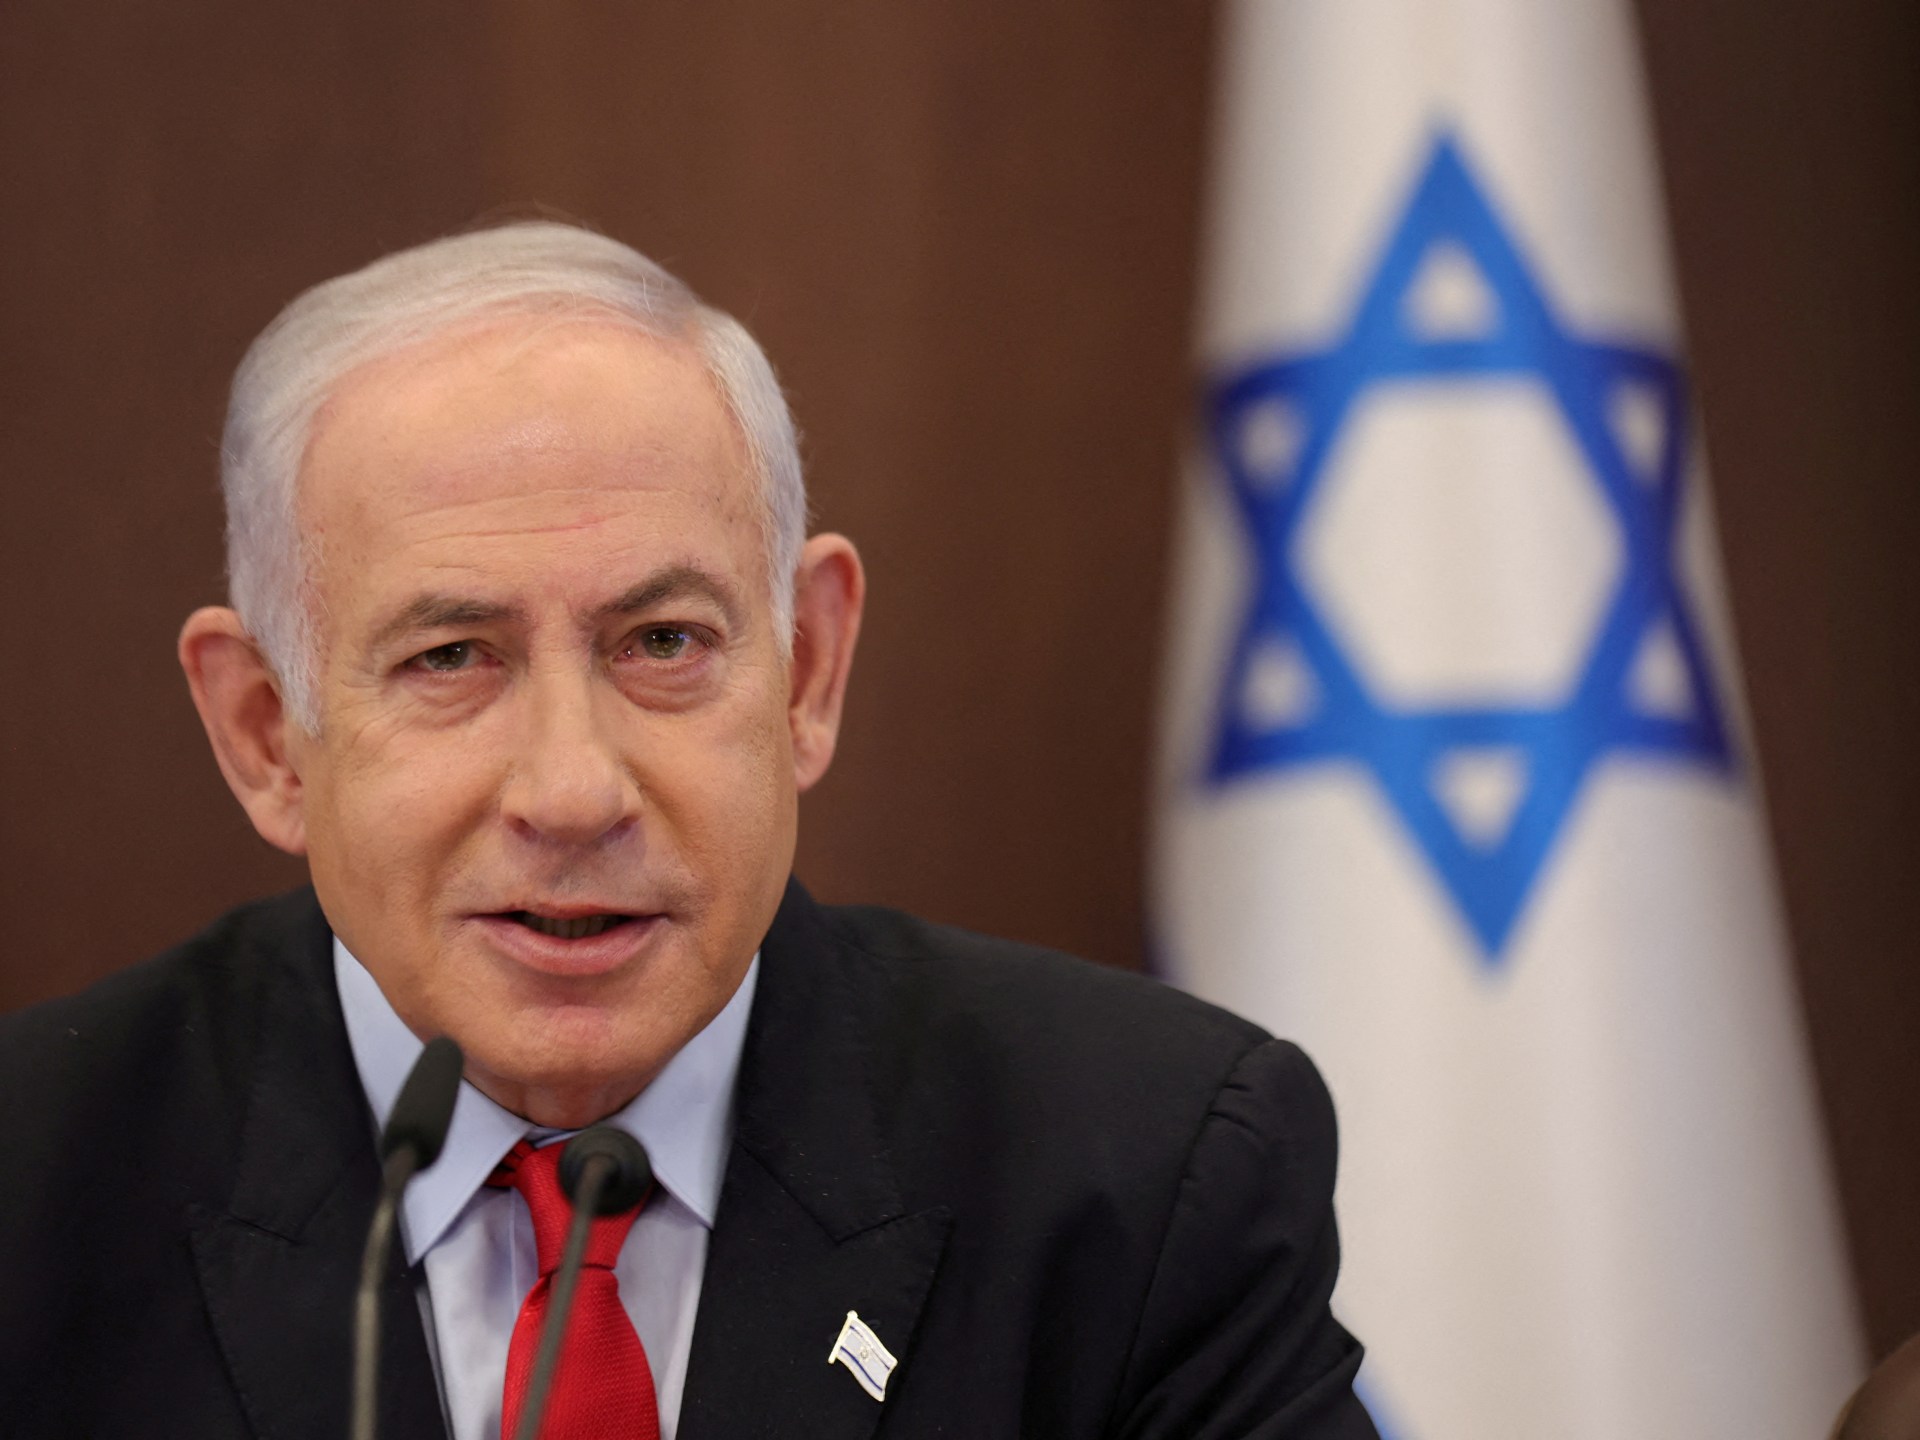 Czym jest izraelski rząd jedności i co chce osiągnąć?  |  Wiadomości o konflikcie izraelsko-palestyńskim